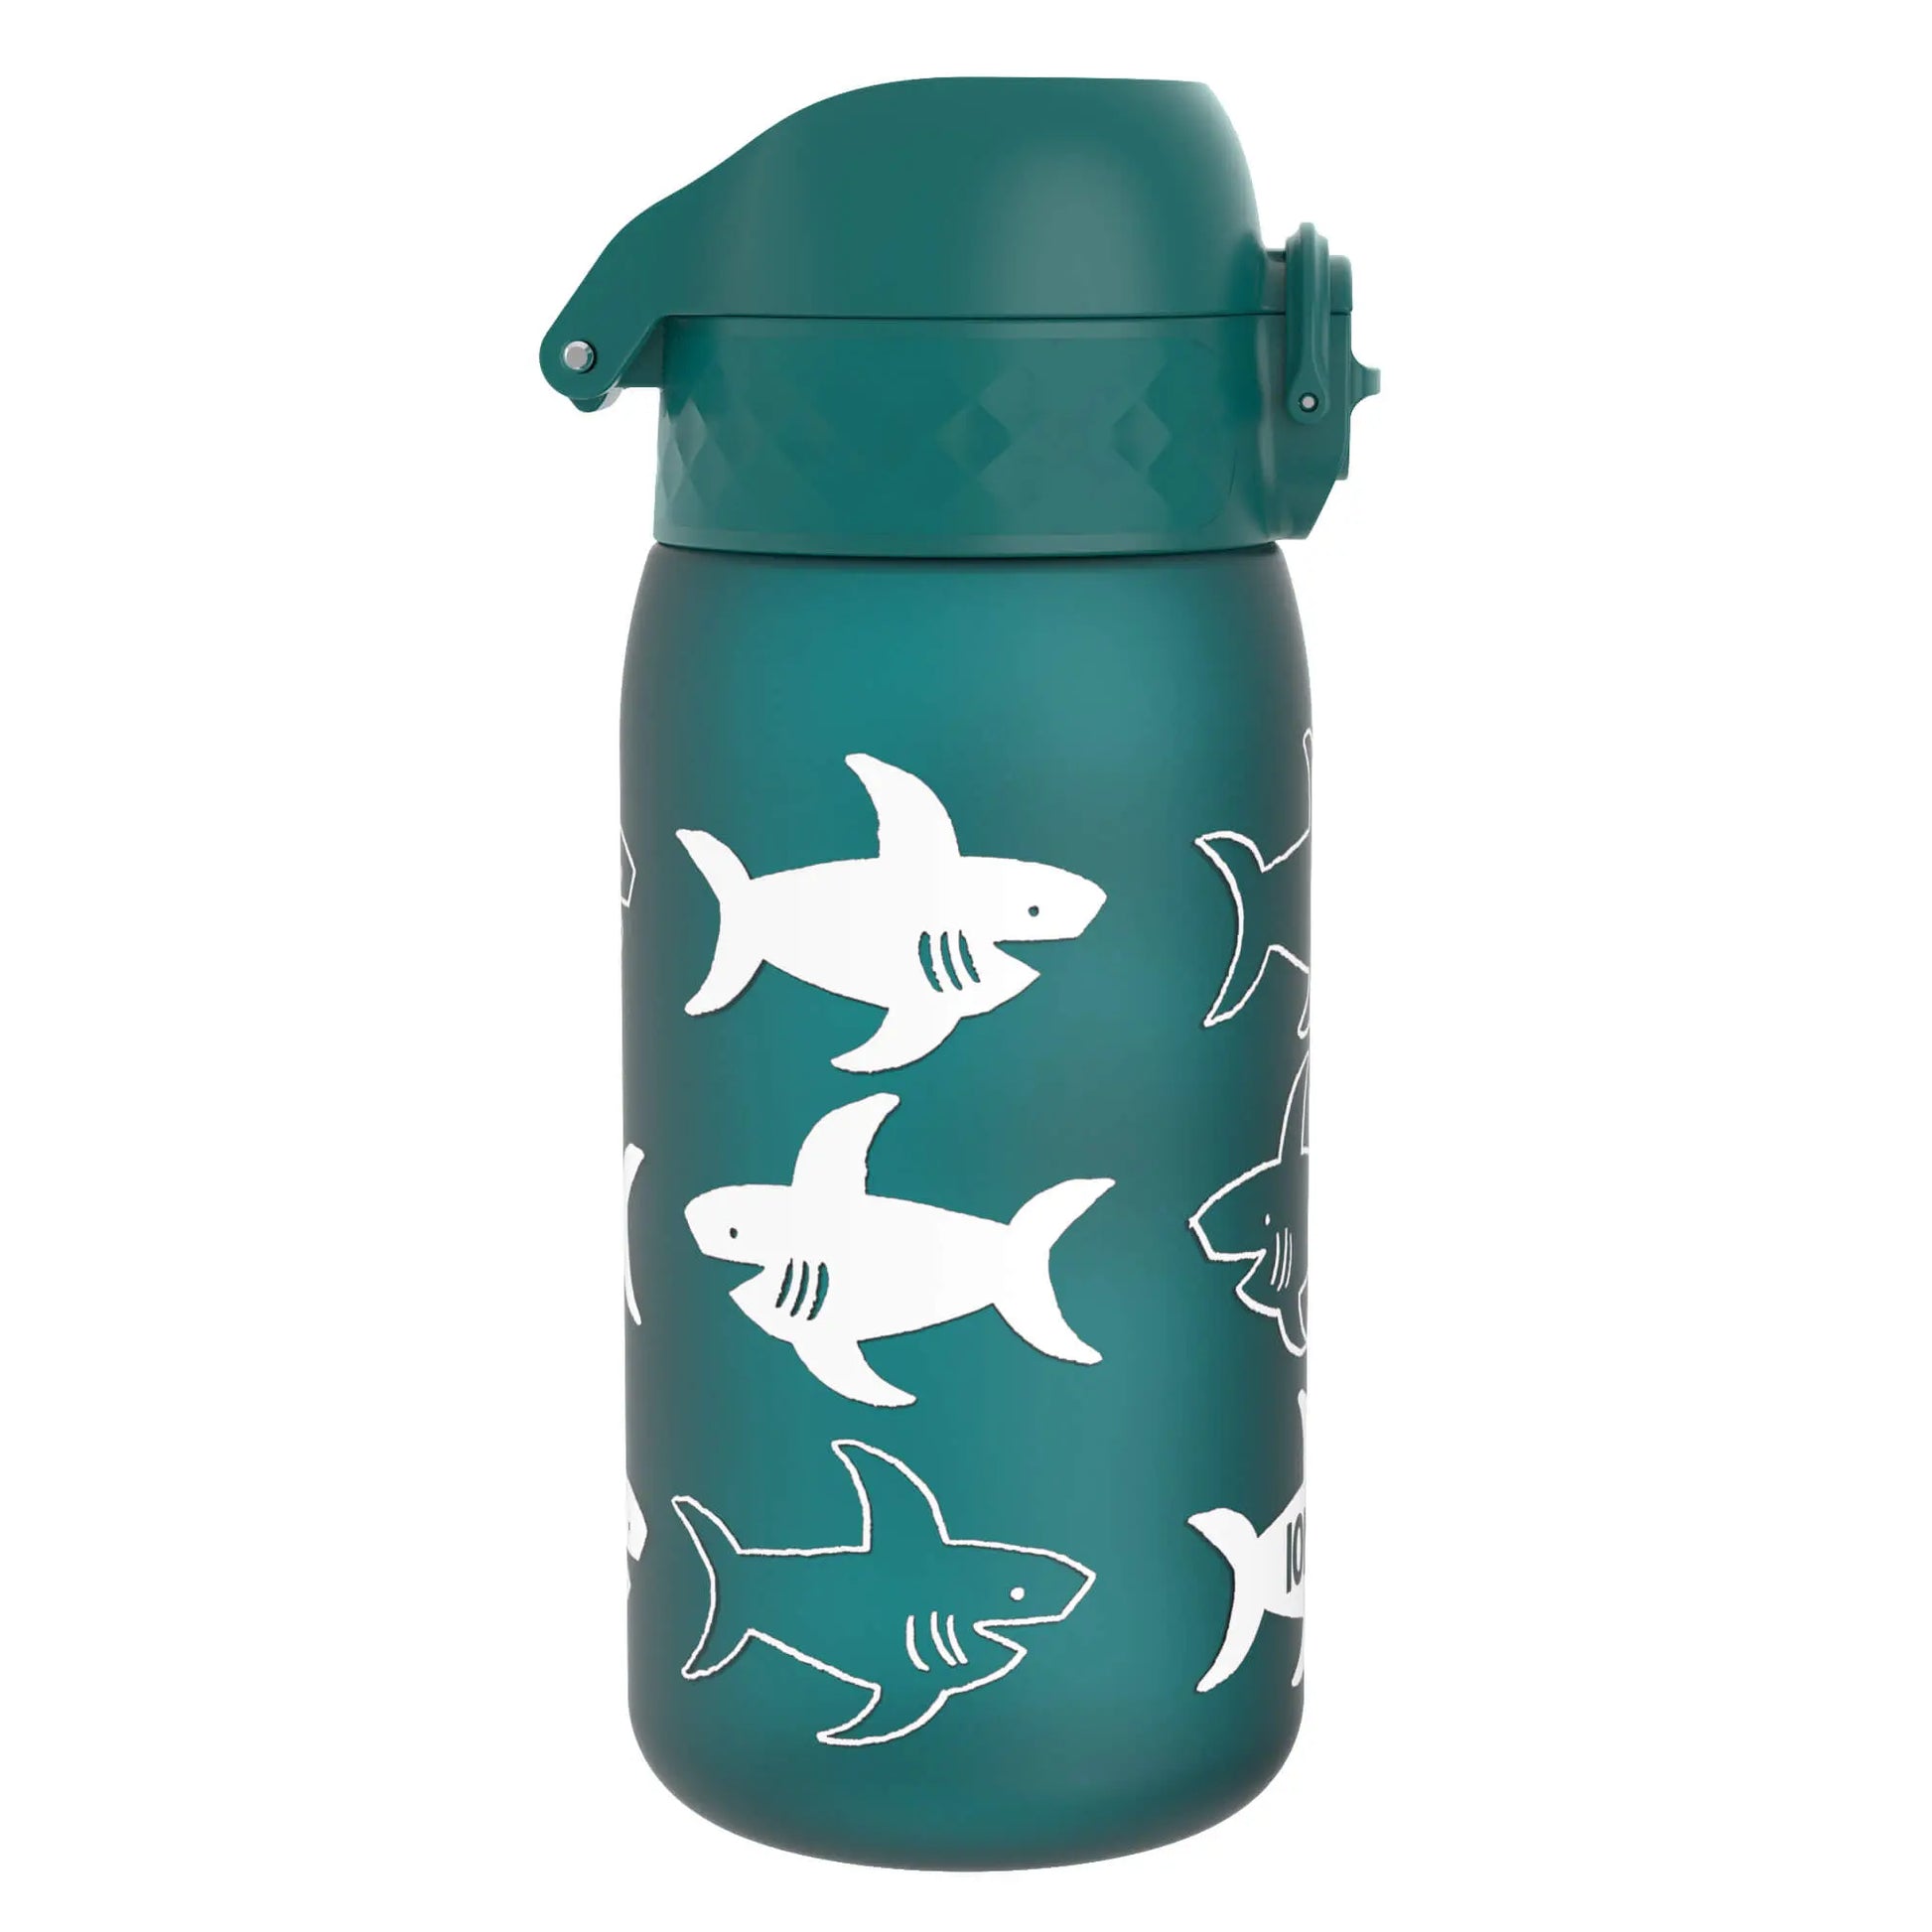 Leak Proof Kids Water Bottle, Recyclon™, Shark, 350ml (12oz) Ion8